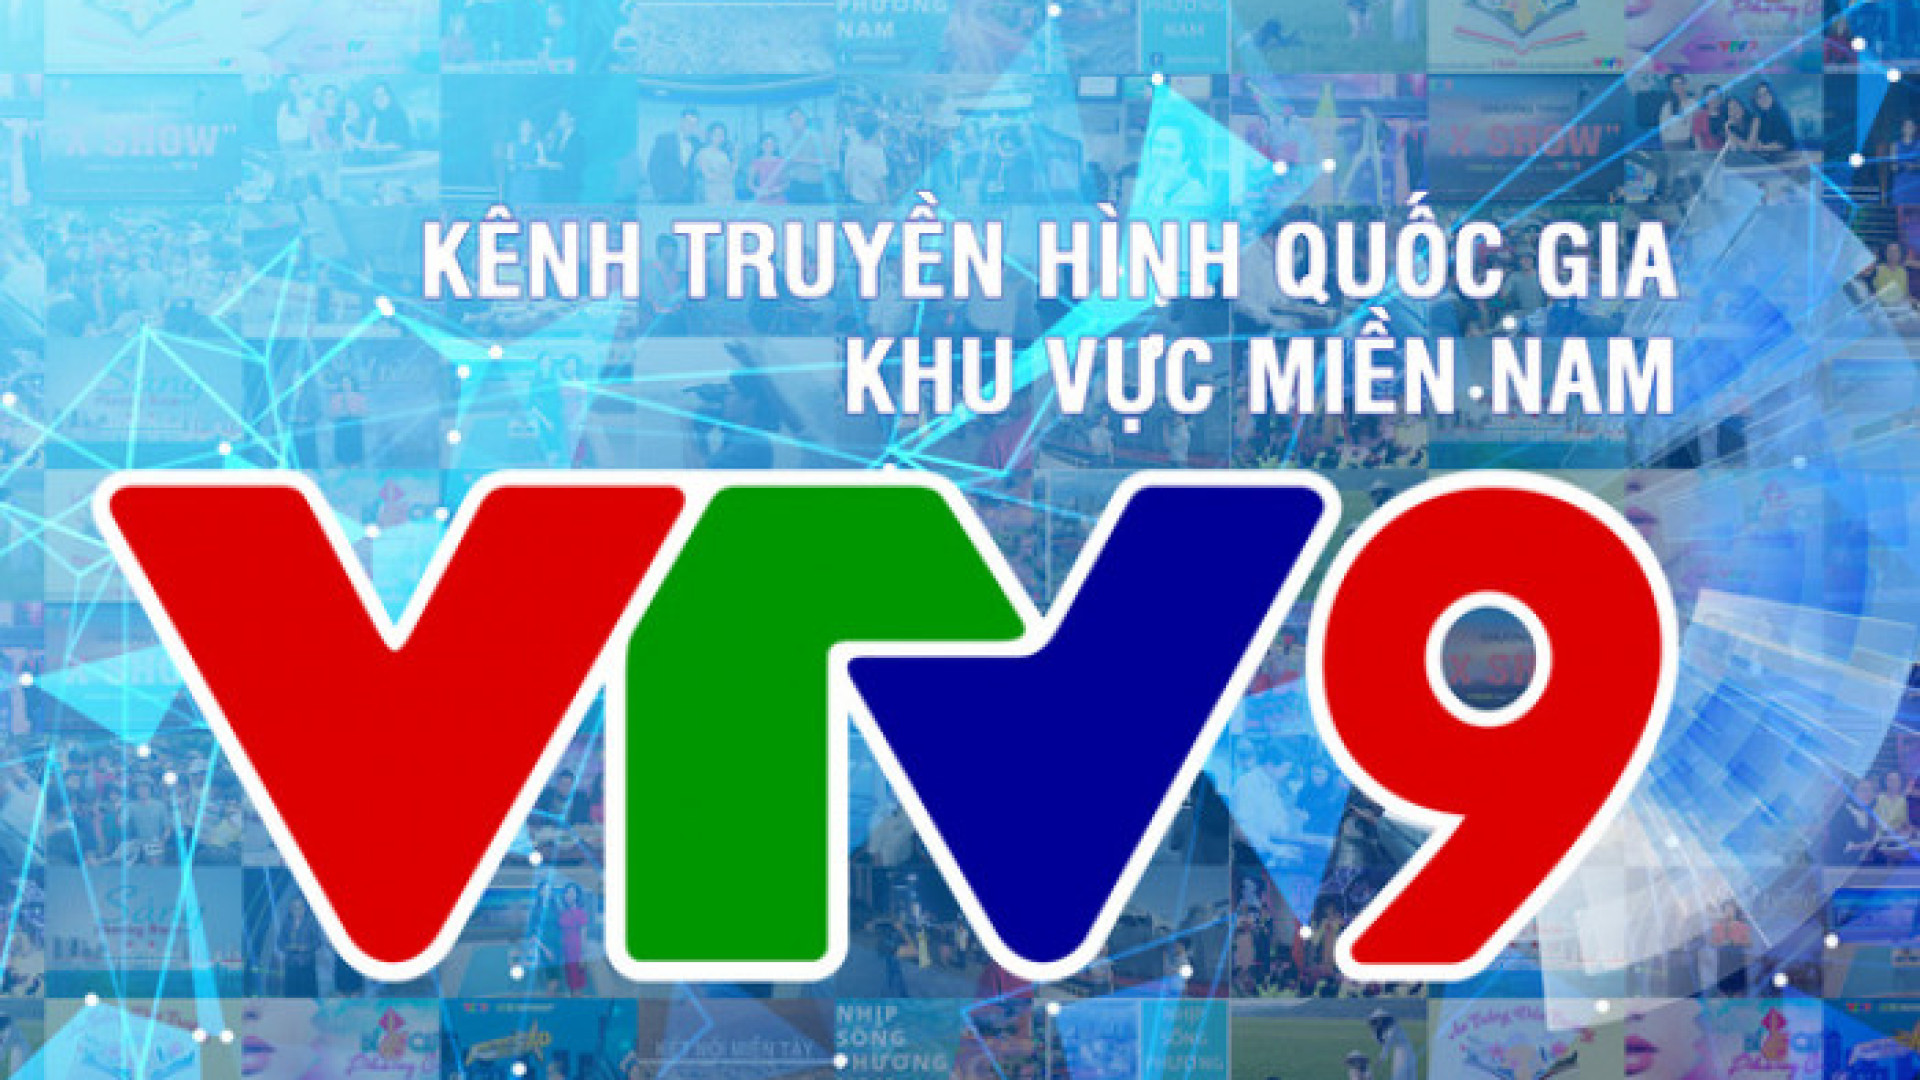 VTV9 và hành trình 15 năm gắn bó với khán giả Nam Bộ